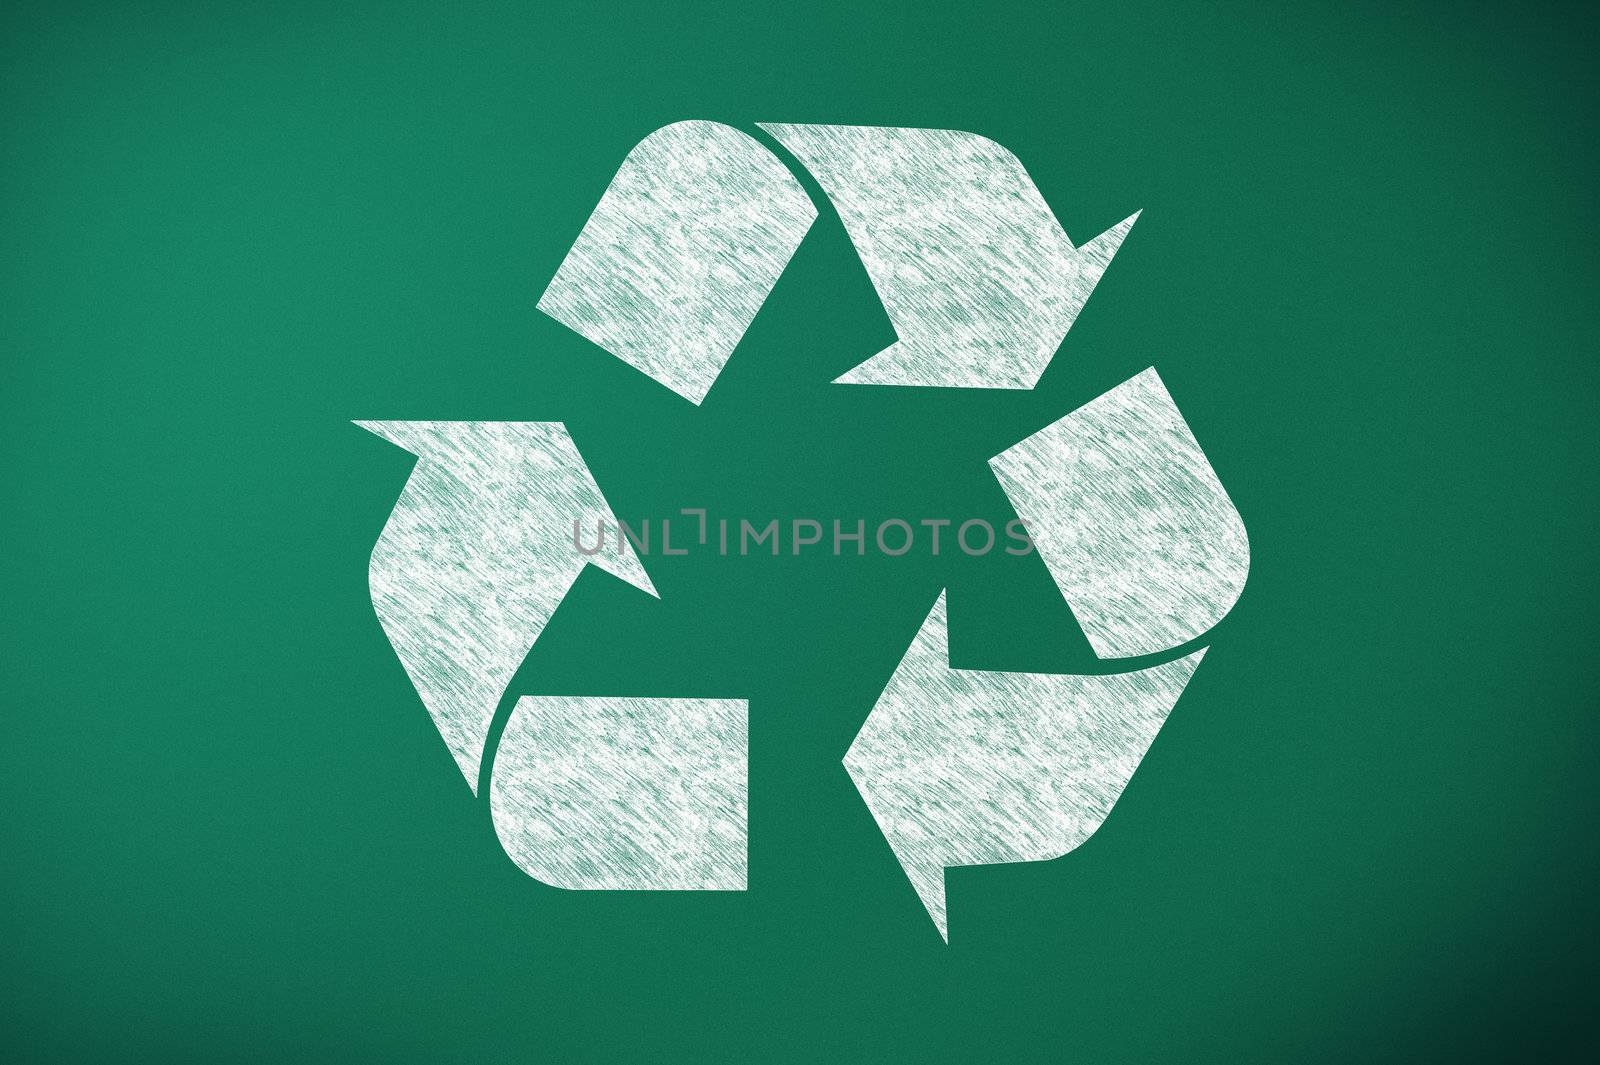 recycling symbol on green chalk board by matteobragaglio